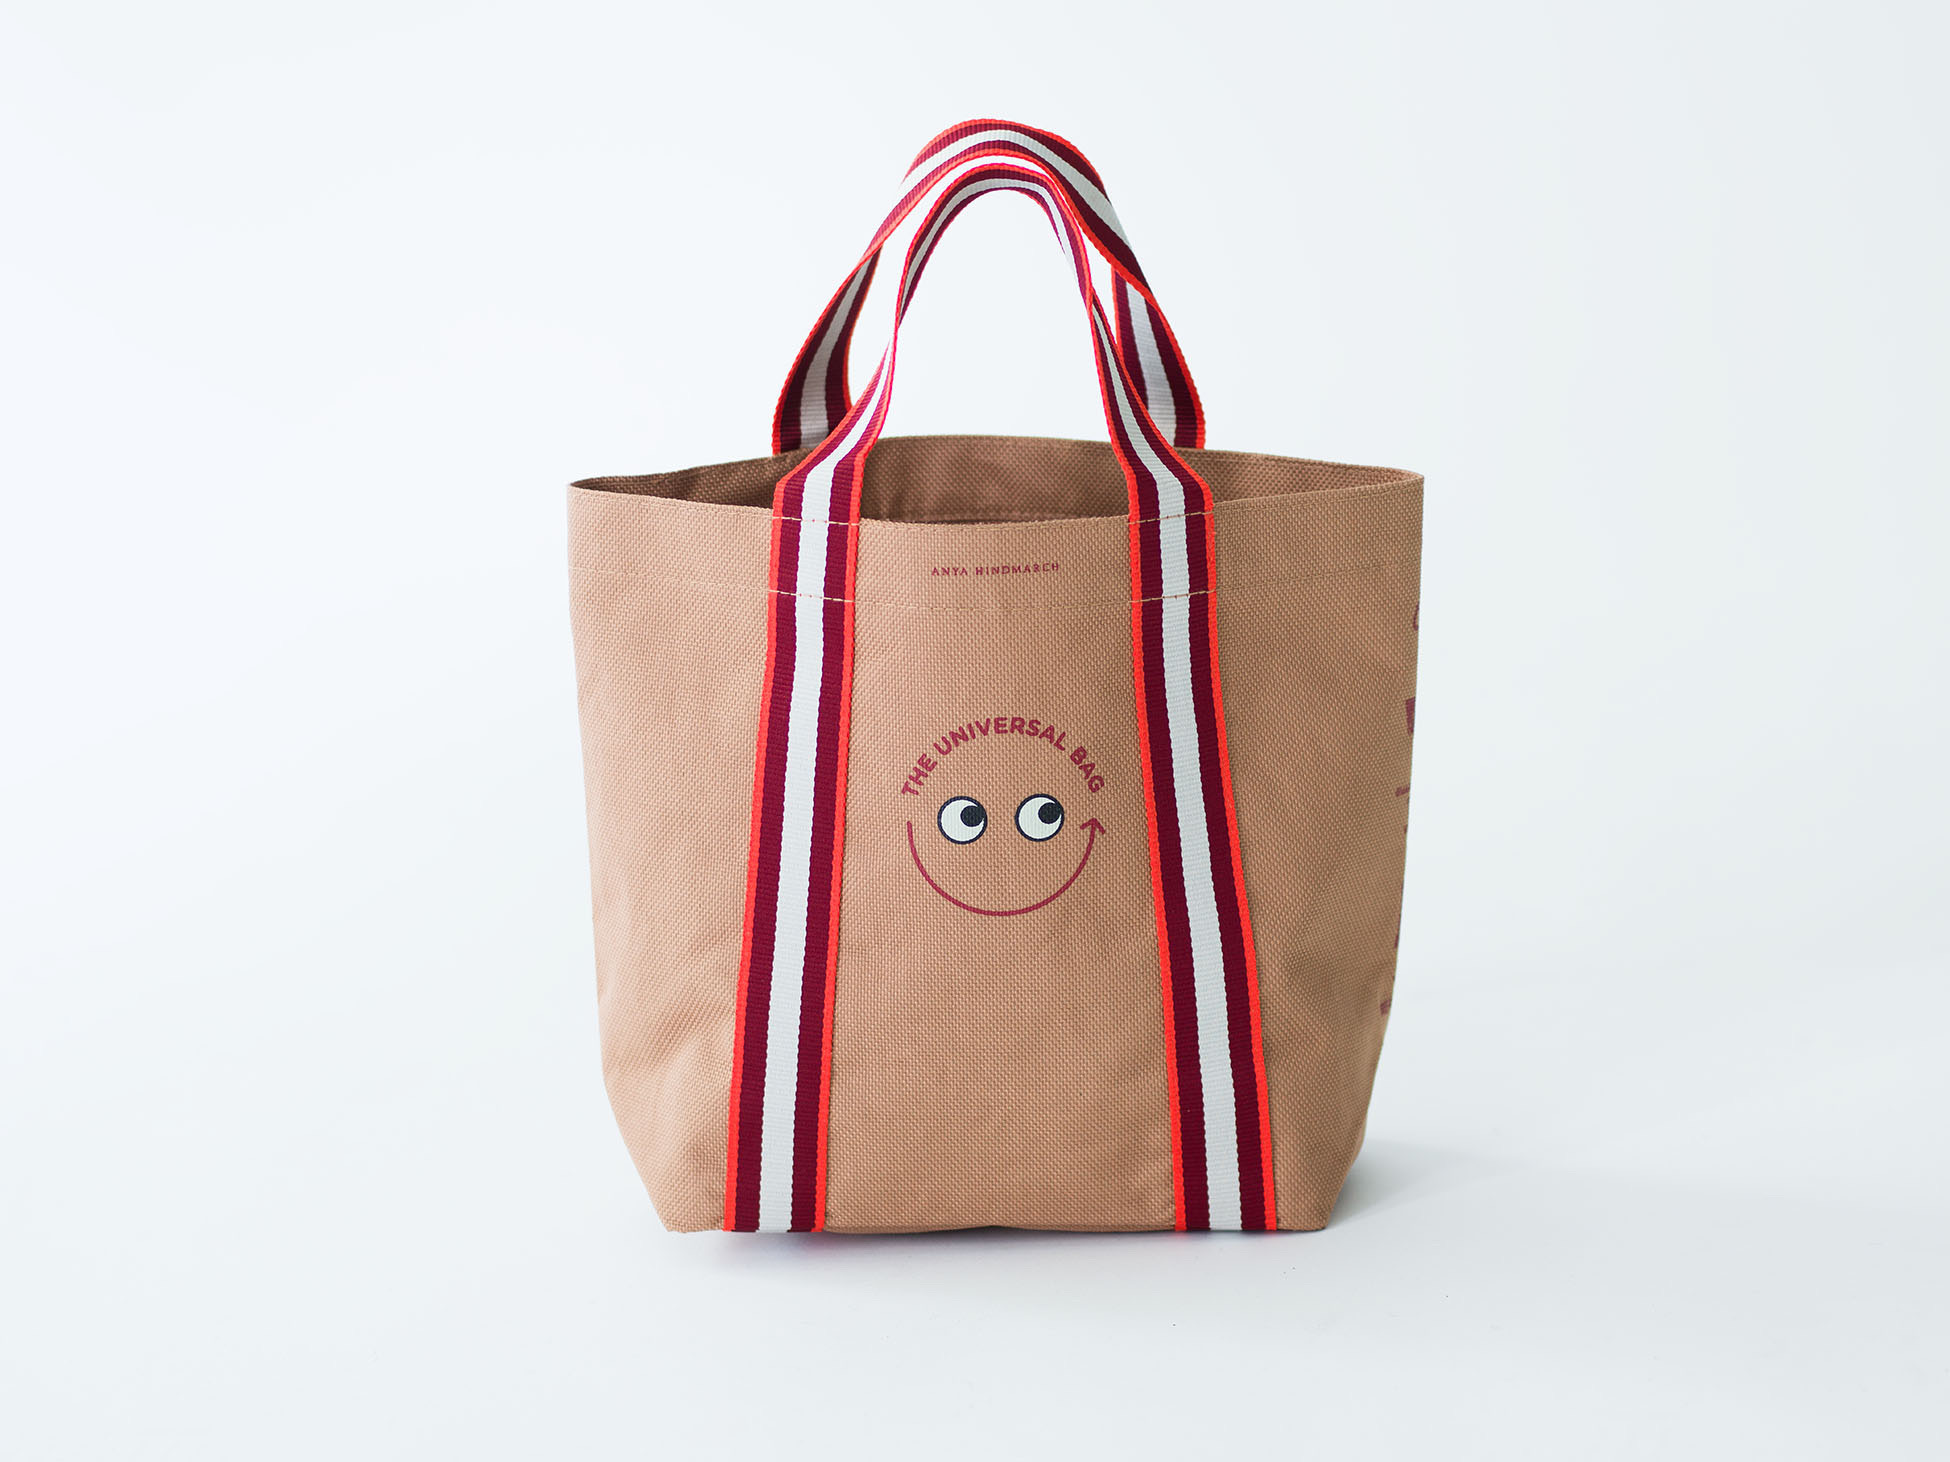 Anya Hindmarch "Mini Universal Bag" 販売方法のお知らせ